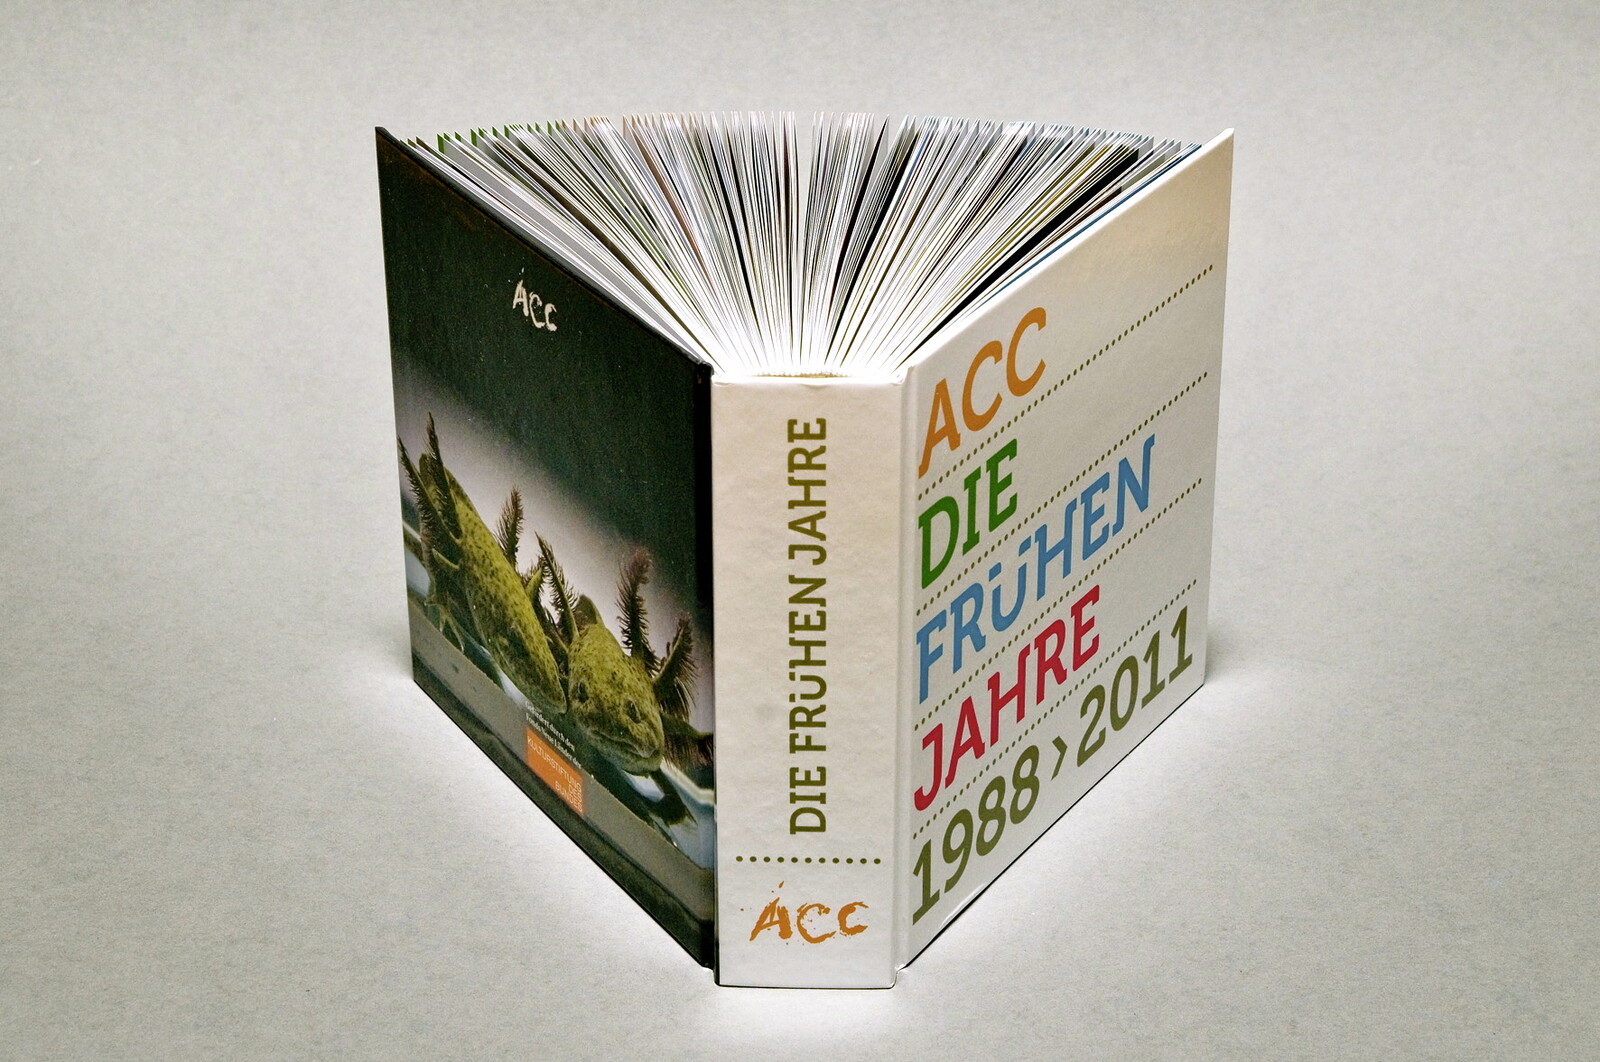 Katalog: ACC - Die frühen Jahre 1988 > 2011